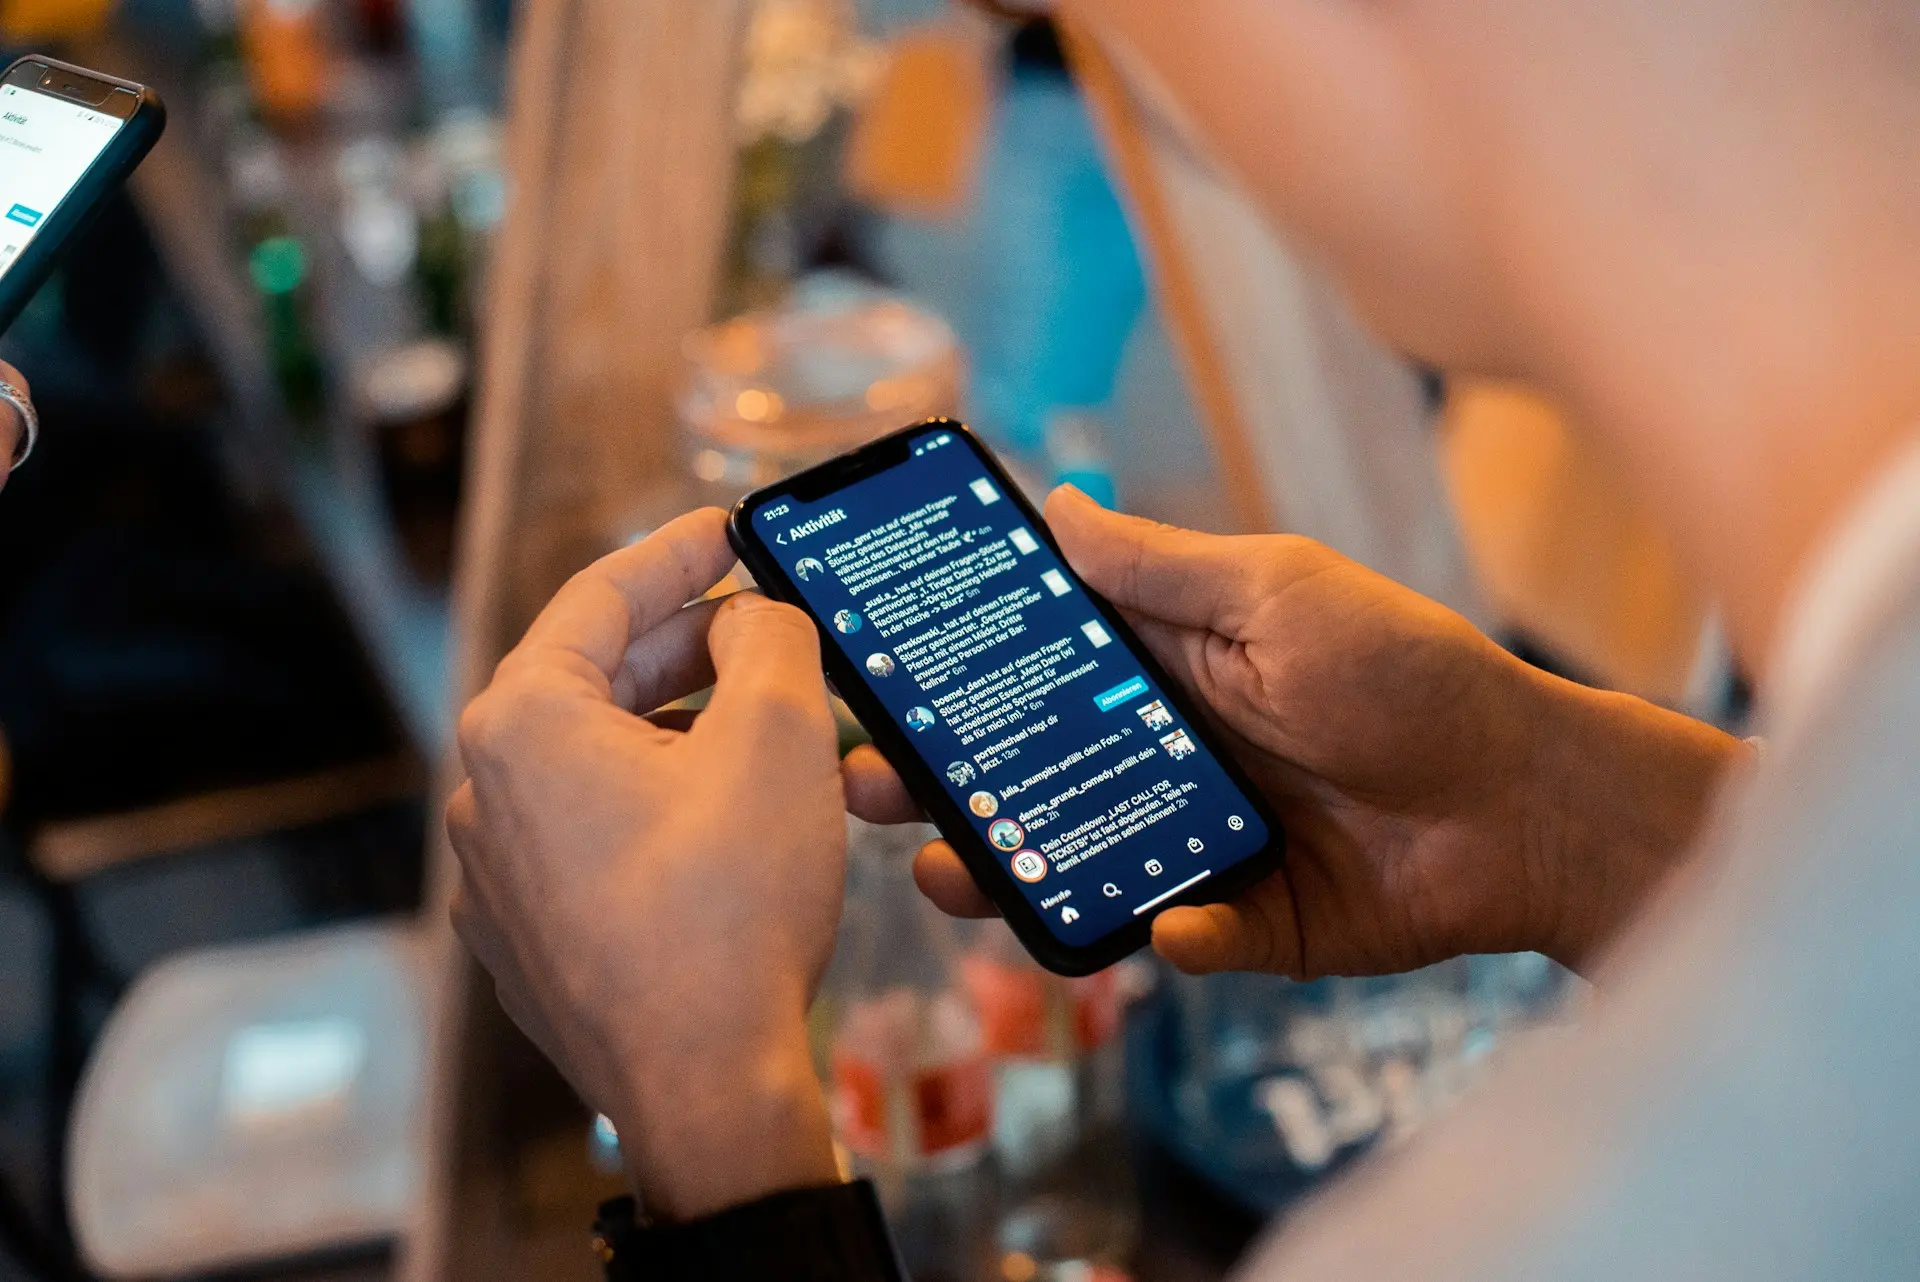 Un téléphone est tenu entre 2 mains, avec l'application Instagram ouverte sur l'écran.